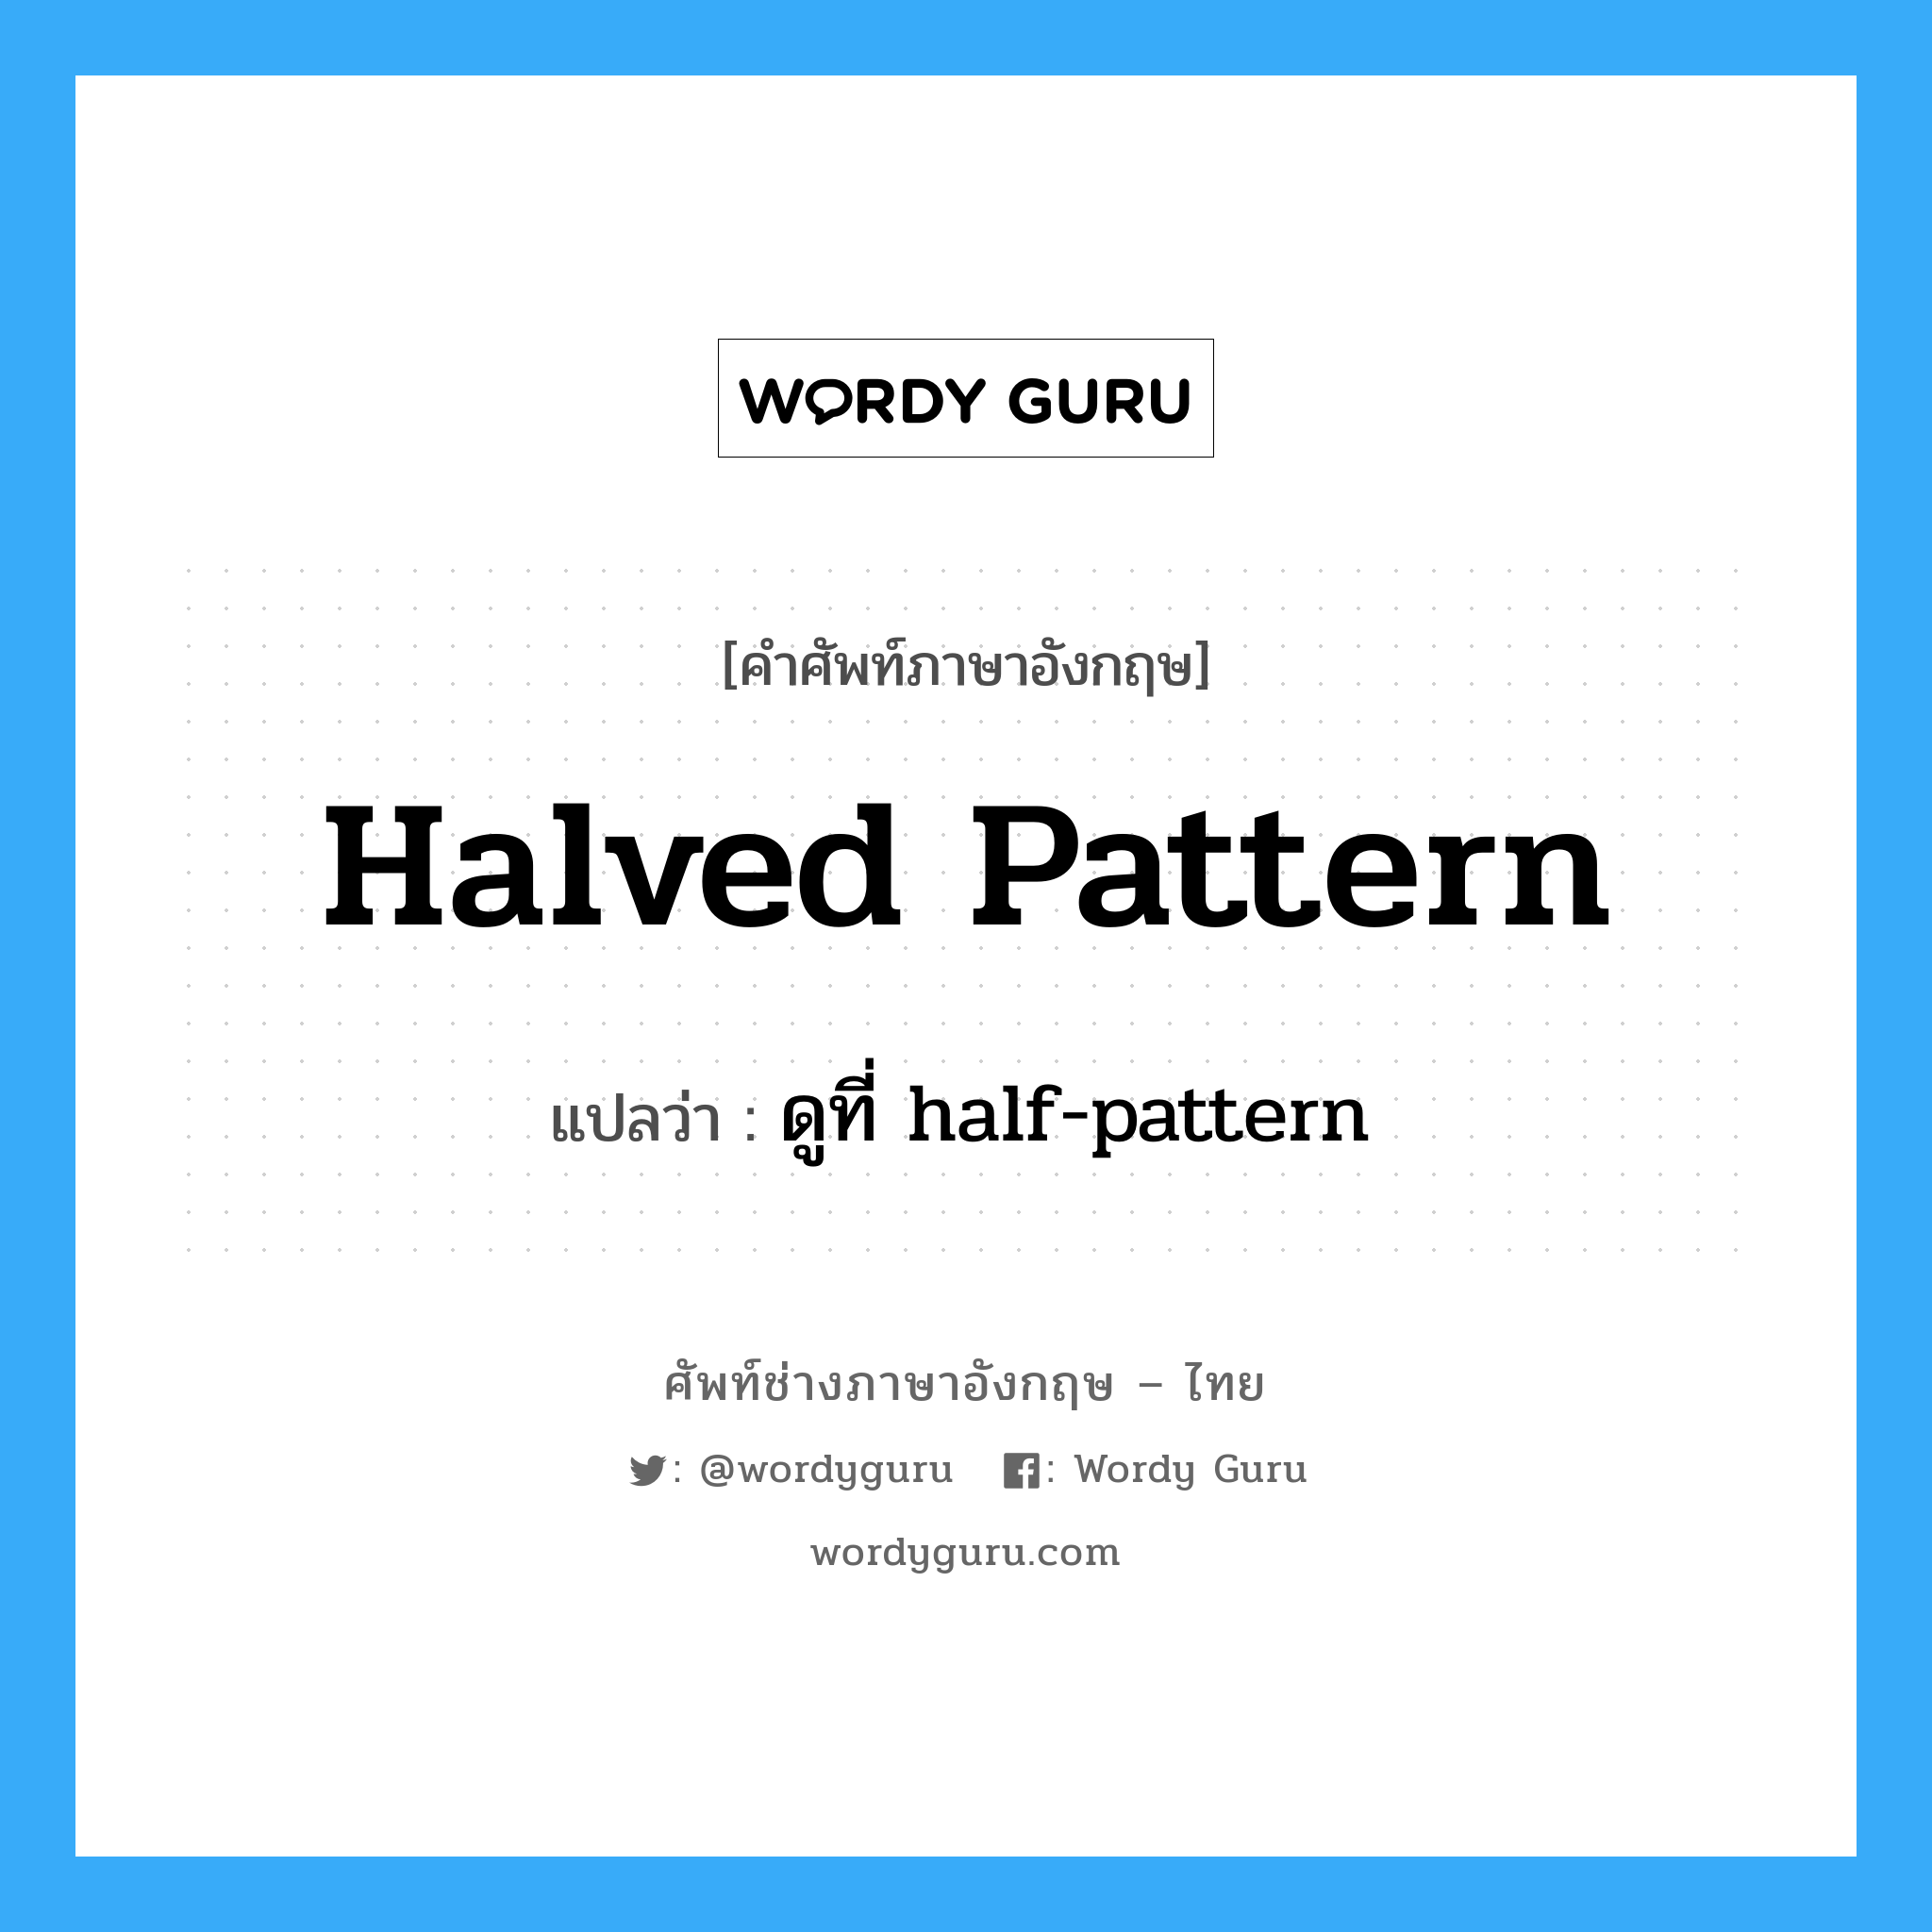 ดูที่ half-pattern ภาษาอังกฤษ?, คำศัพท์ช่างภาษาอังกฤษ - ไทย ดูที่ half-pattern คำศัพท์ภาษาอังกฤษ ดูที่ half-pattern แปลว่า halved pattern